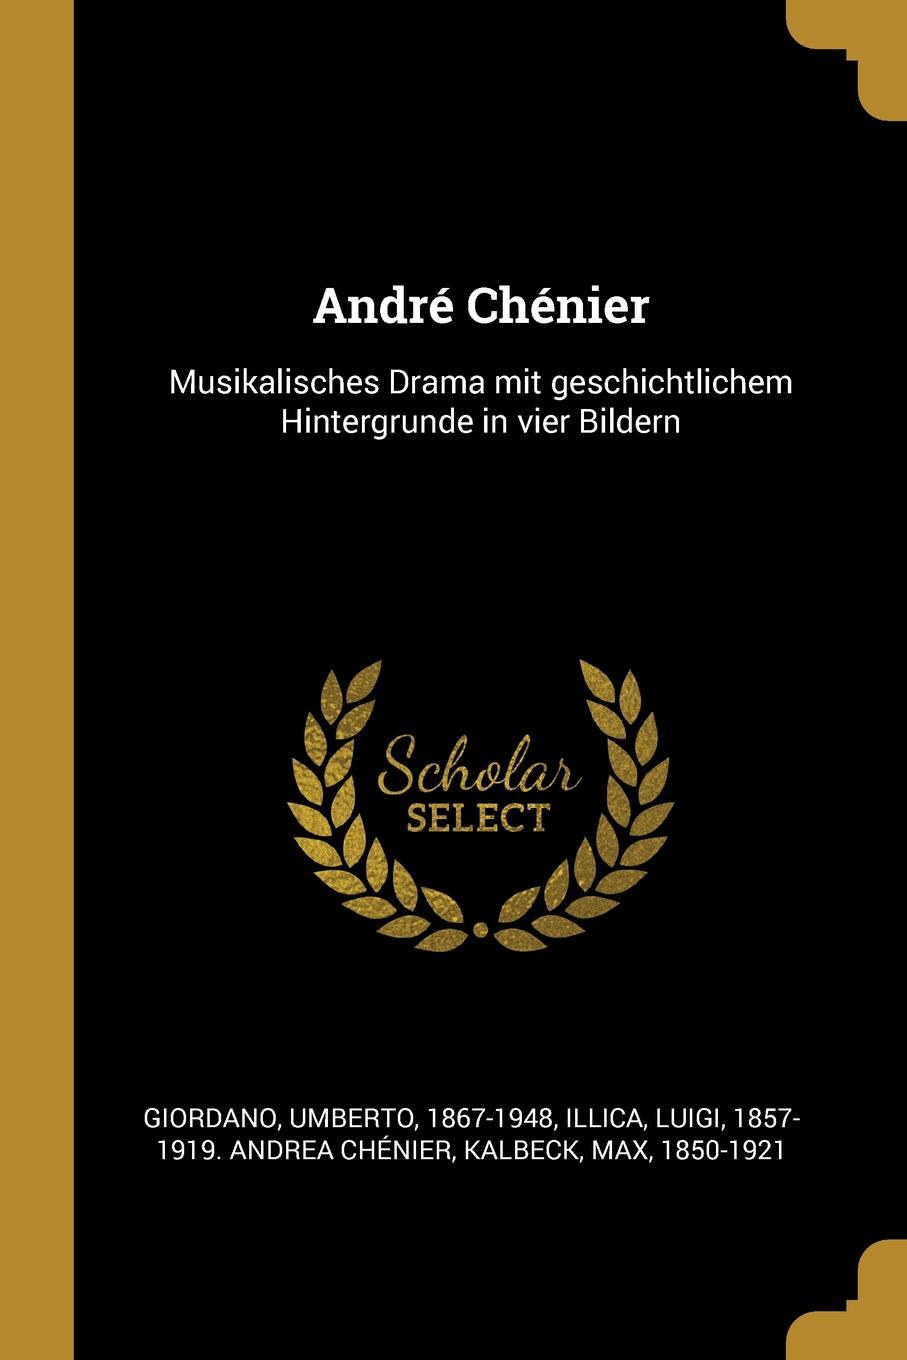 Andre Chenier. Musikalisches Drama mit geschichtlichem Hintergrunde in vier Bildern